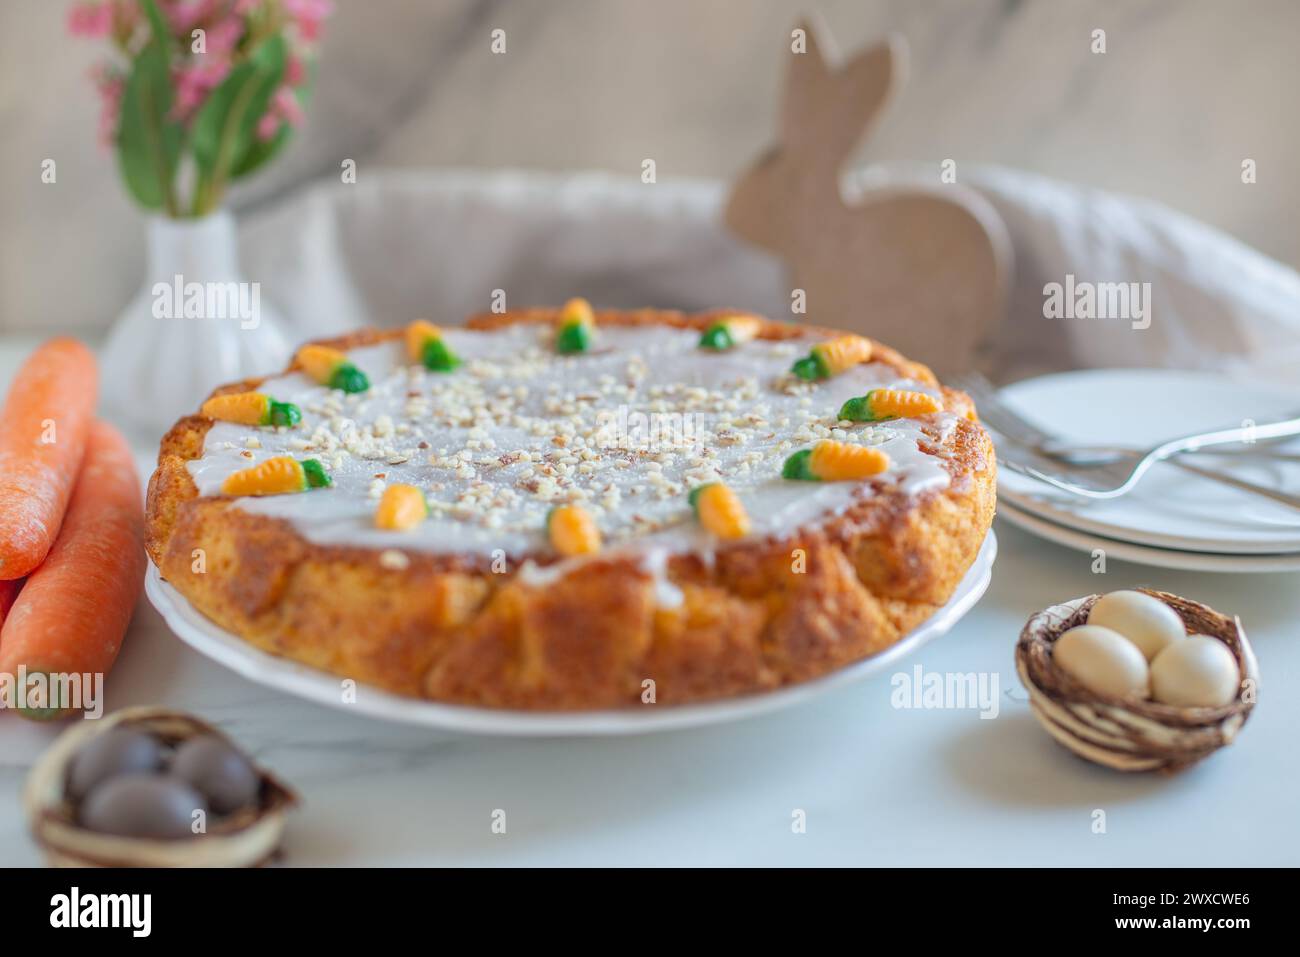 Pasqua torta di carote con glassa di formaggio cremoso Foto Stock